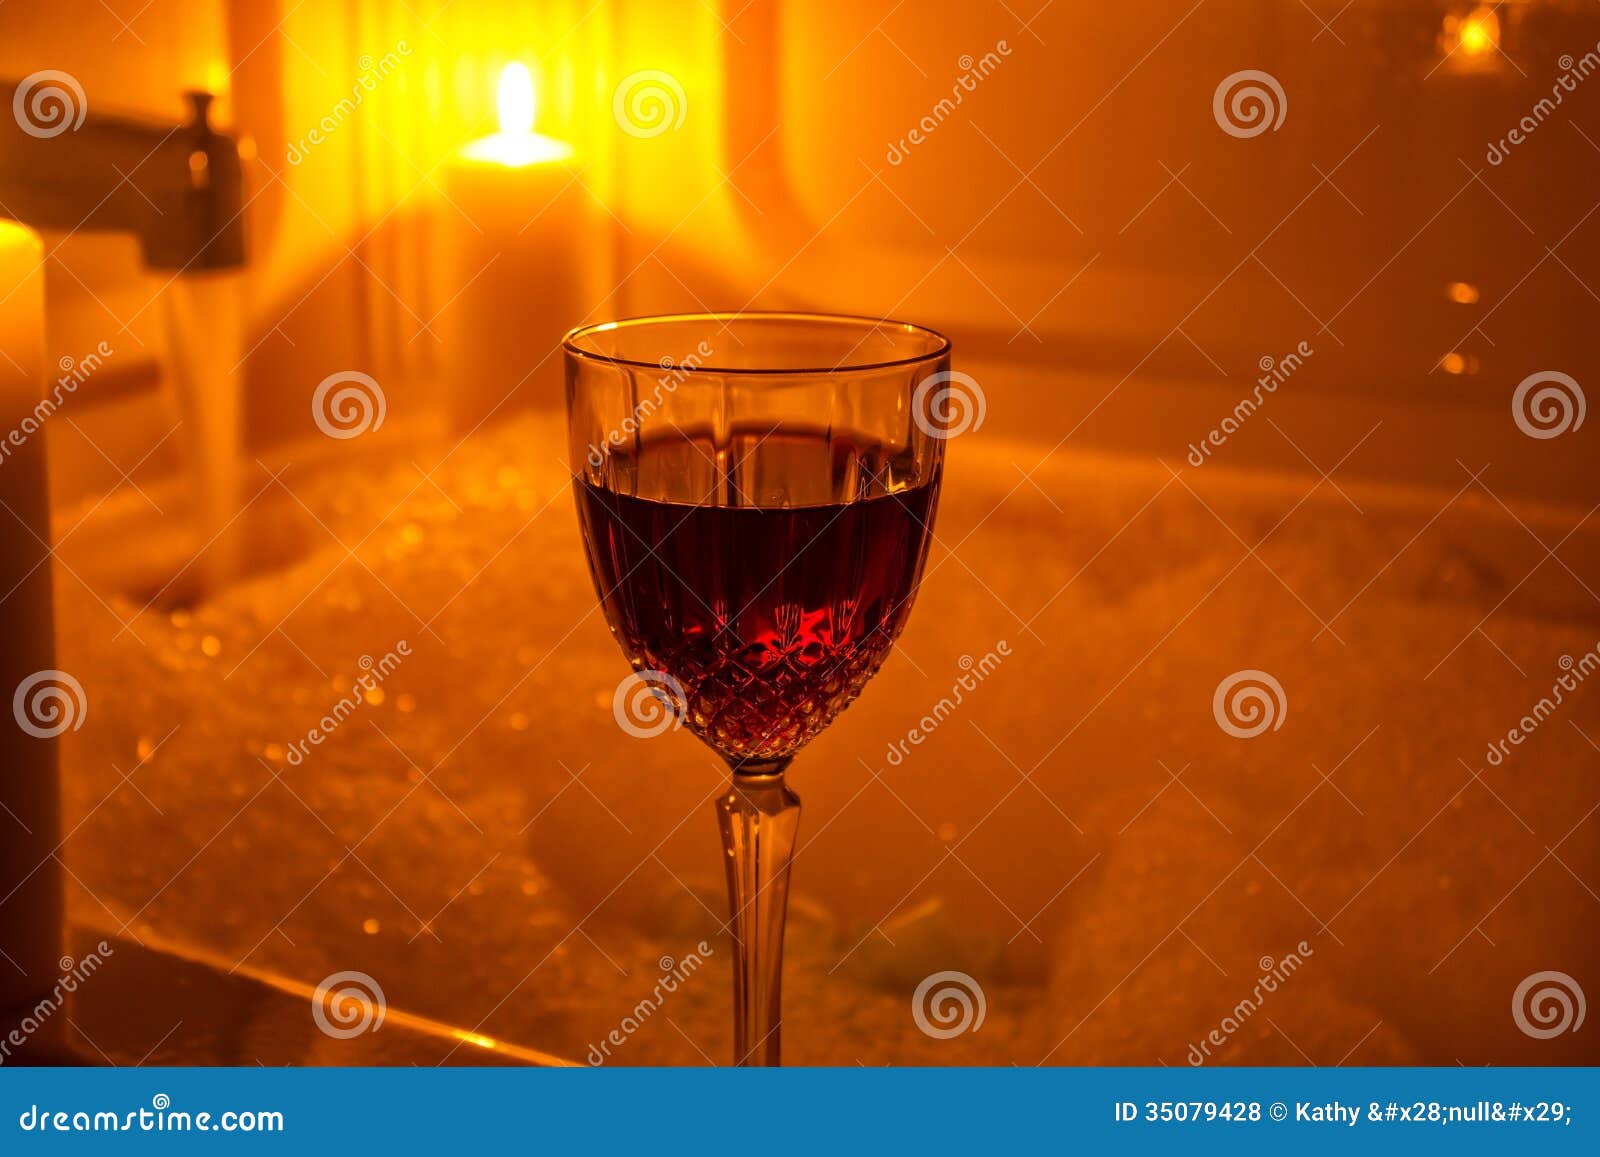 Ванна бокал вина. Ванна свечи вино. Ванна с пеной и свечами вином. Ванная пена свечи вино. Красное вино ванна свечи.